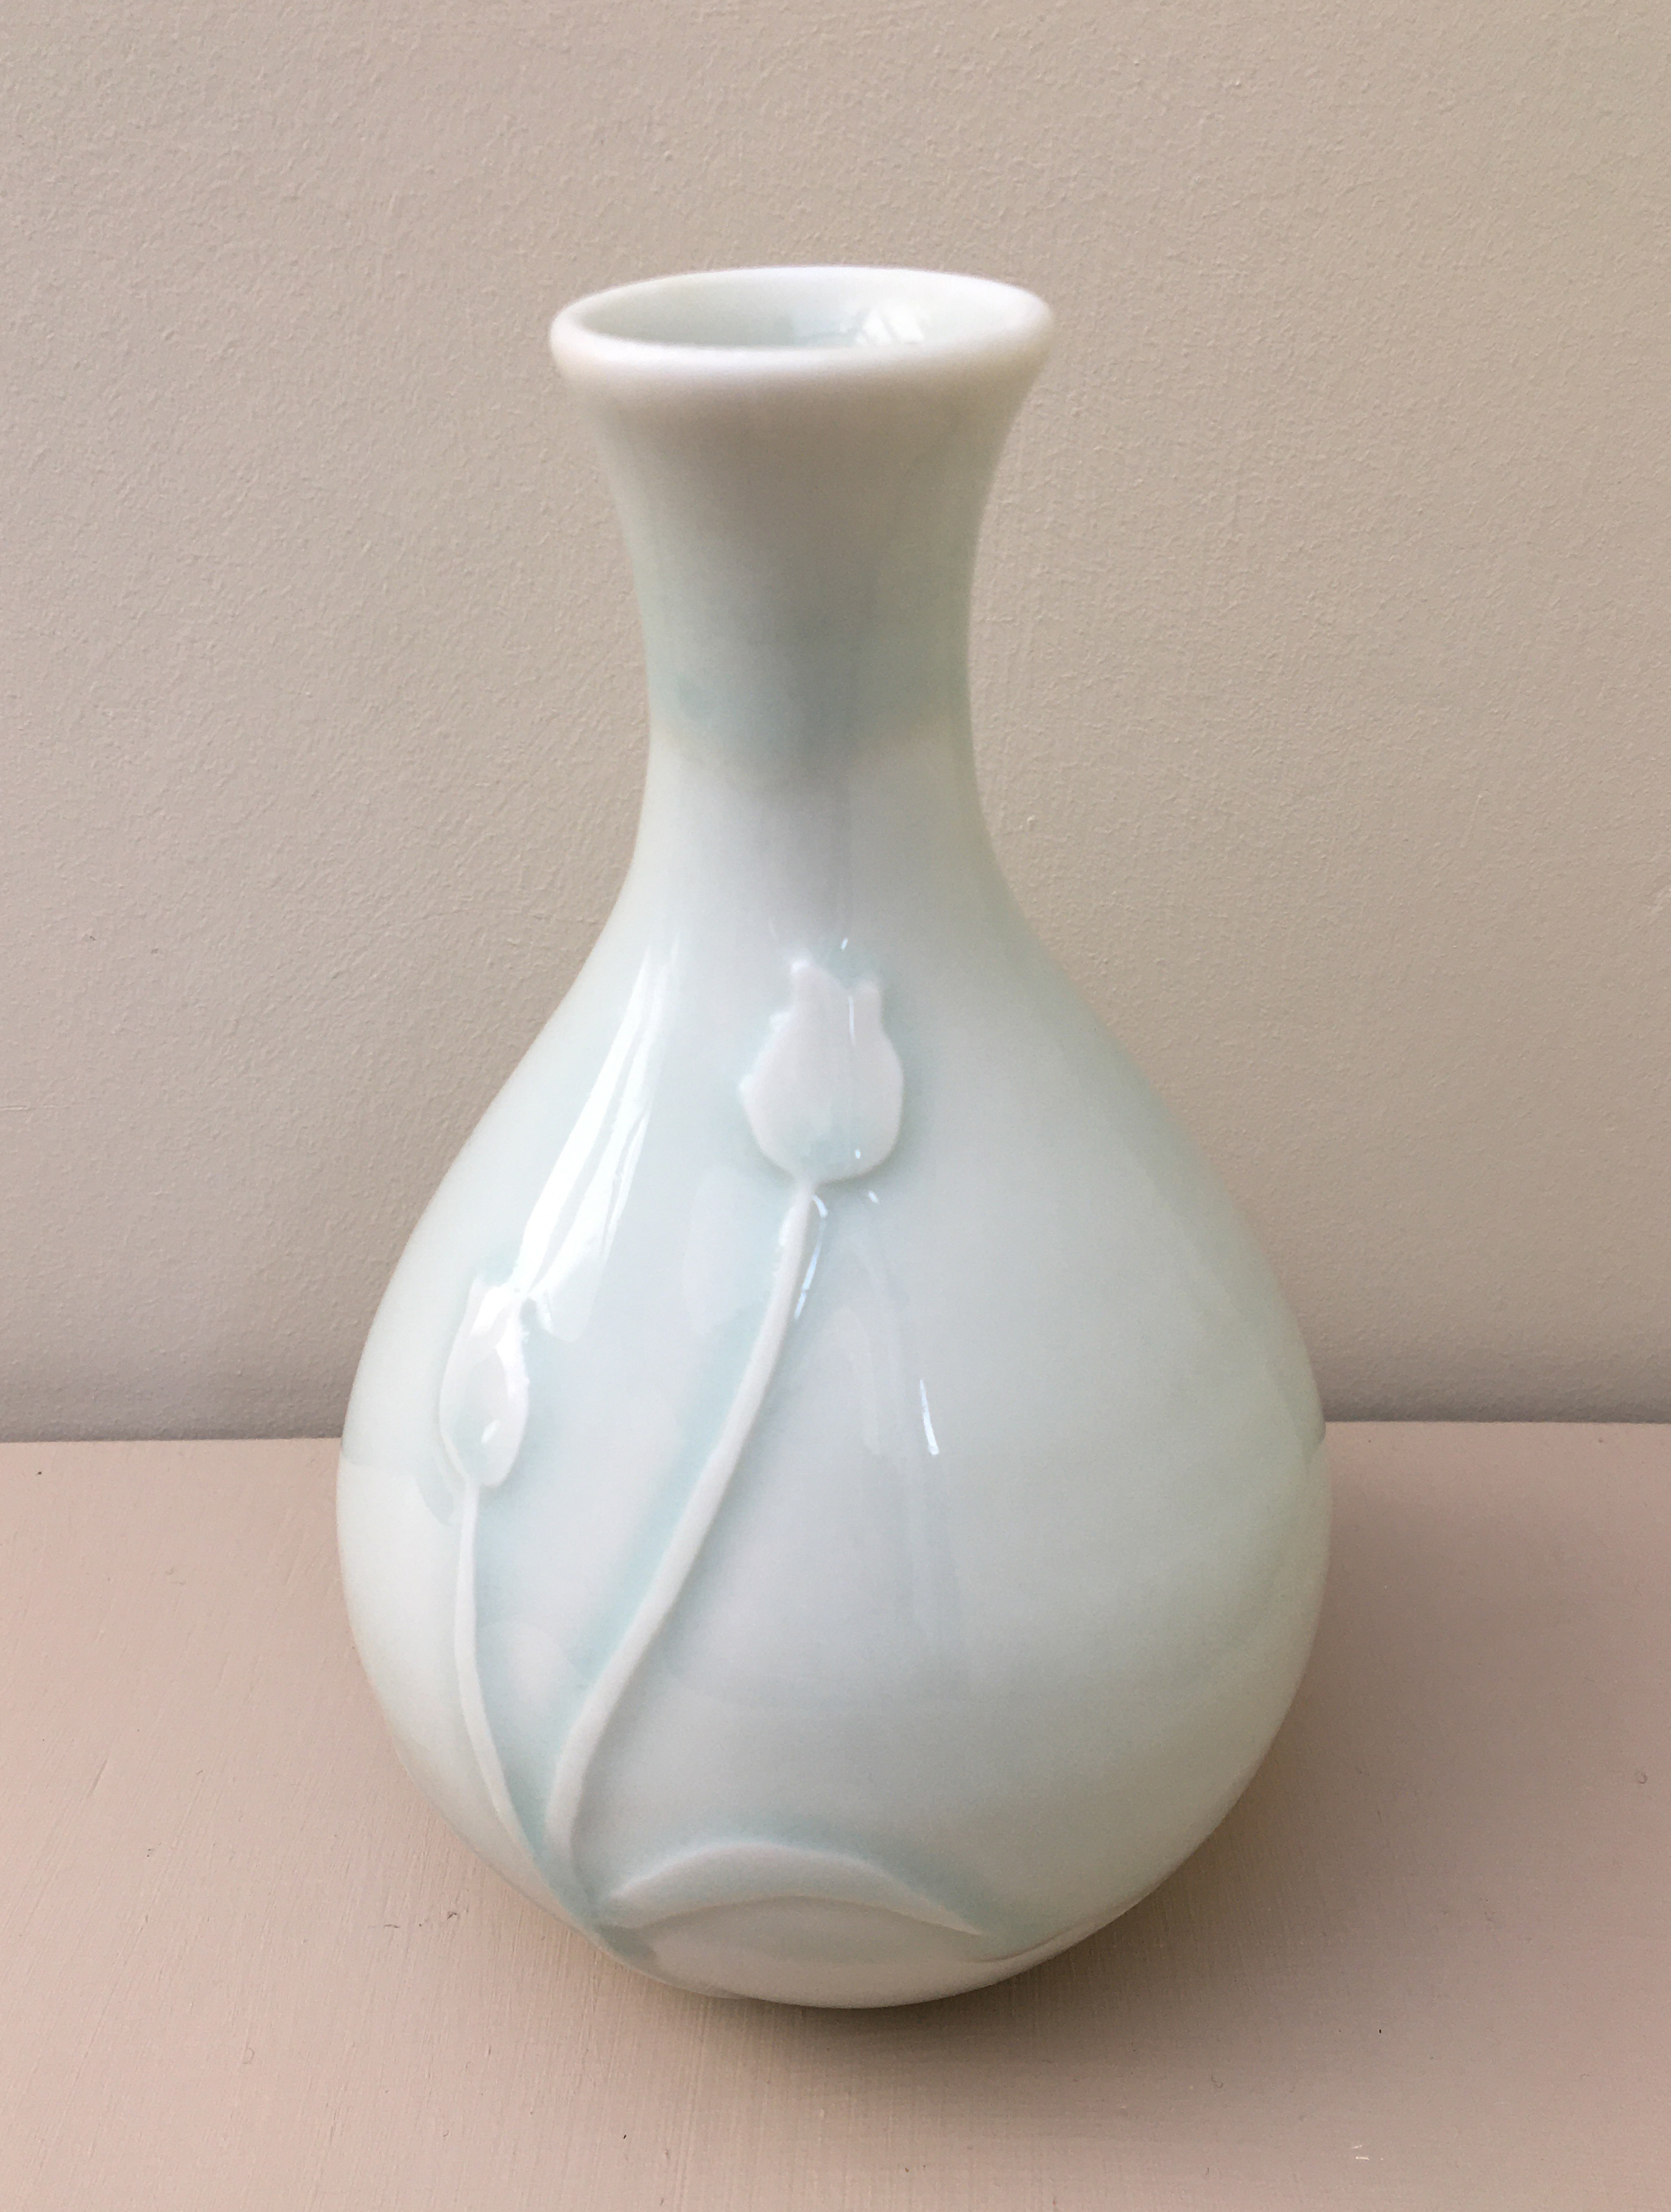 BJ Porcelain bottle vase with campion flower decoration 